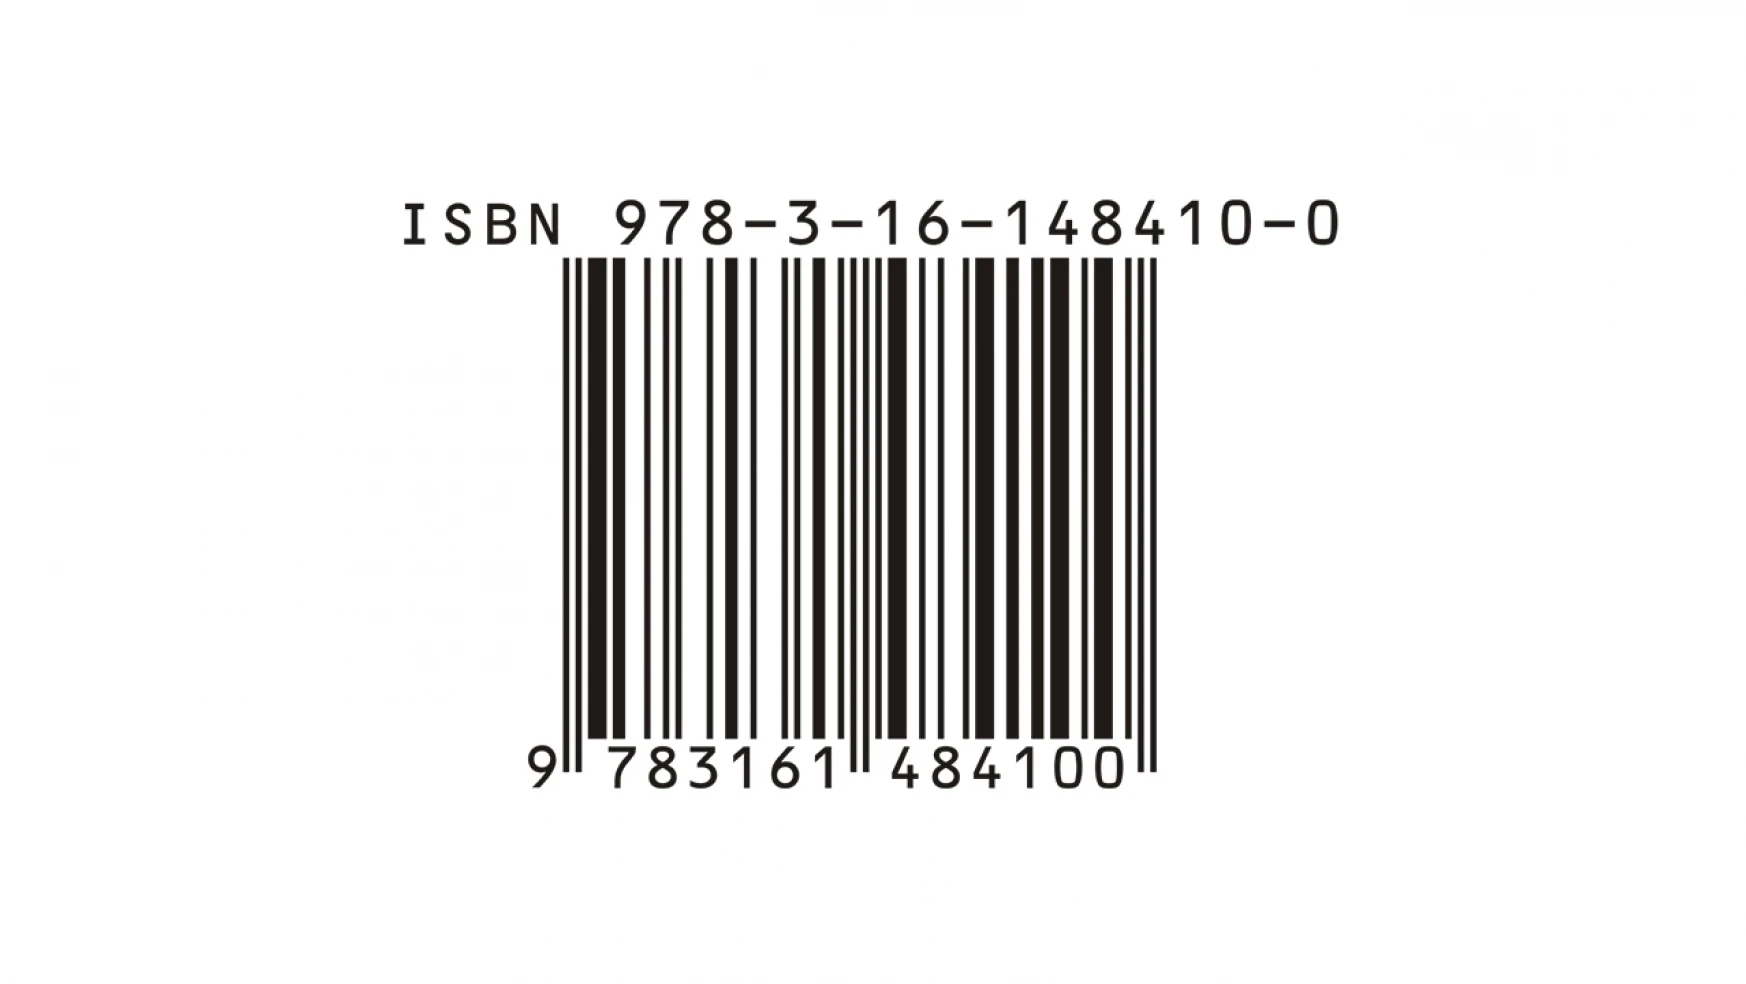 ISBN sayısında rekor kırıldı